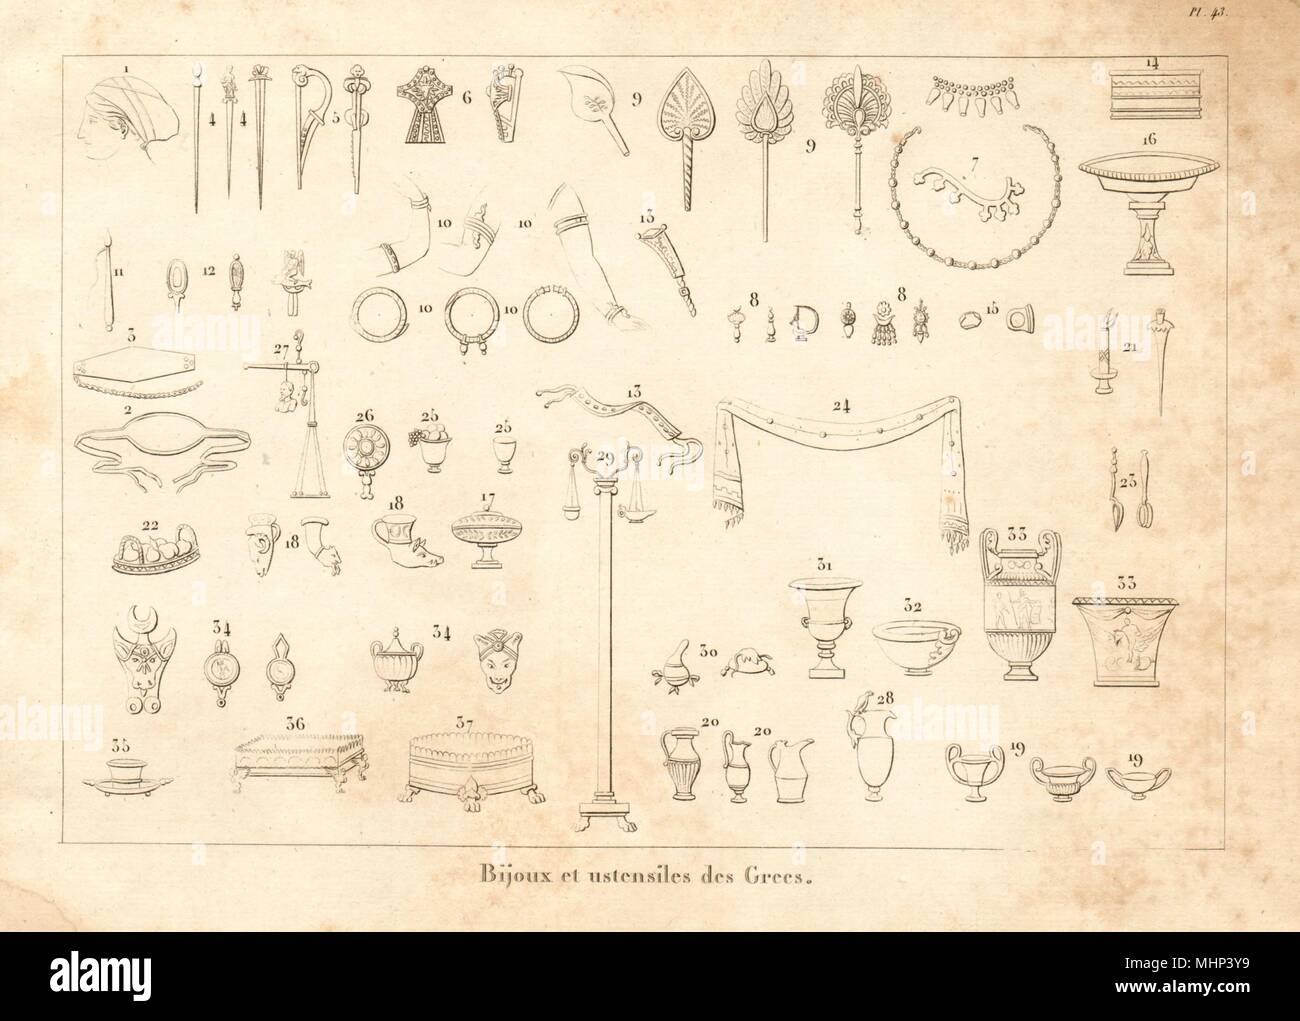 ANCIENT GREECE. Jewellery & utensils. "Bijoux et ustensiles des Grecs" 1832  Stock Photo - Alamy